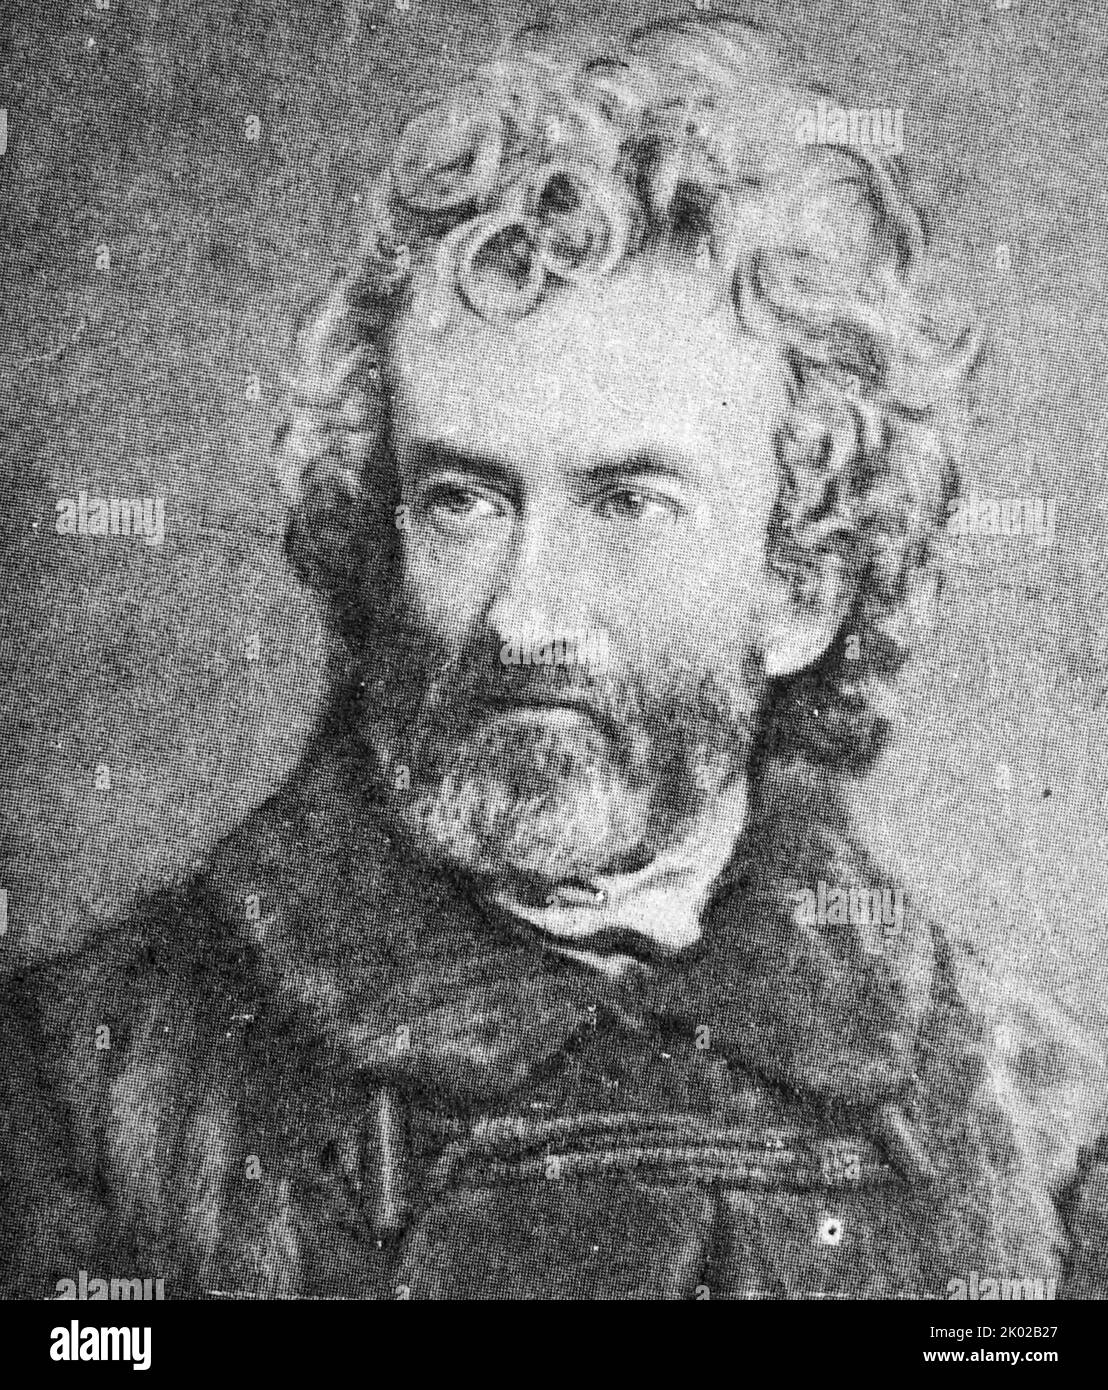 Nicholas Miklouho-Maclay (1846 - 1888) esploratore ucraino-russo, etnologo, antropologo e biologo che divenne famoso come uno dei primi scienziati a stabilirsi tra e studiare le popolazioni indigene della Nuova Guinea che non avevano mai visto un europeo Foto Stock